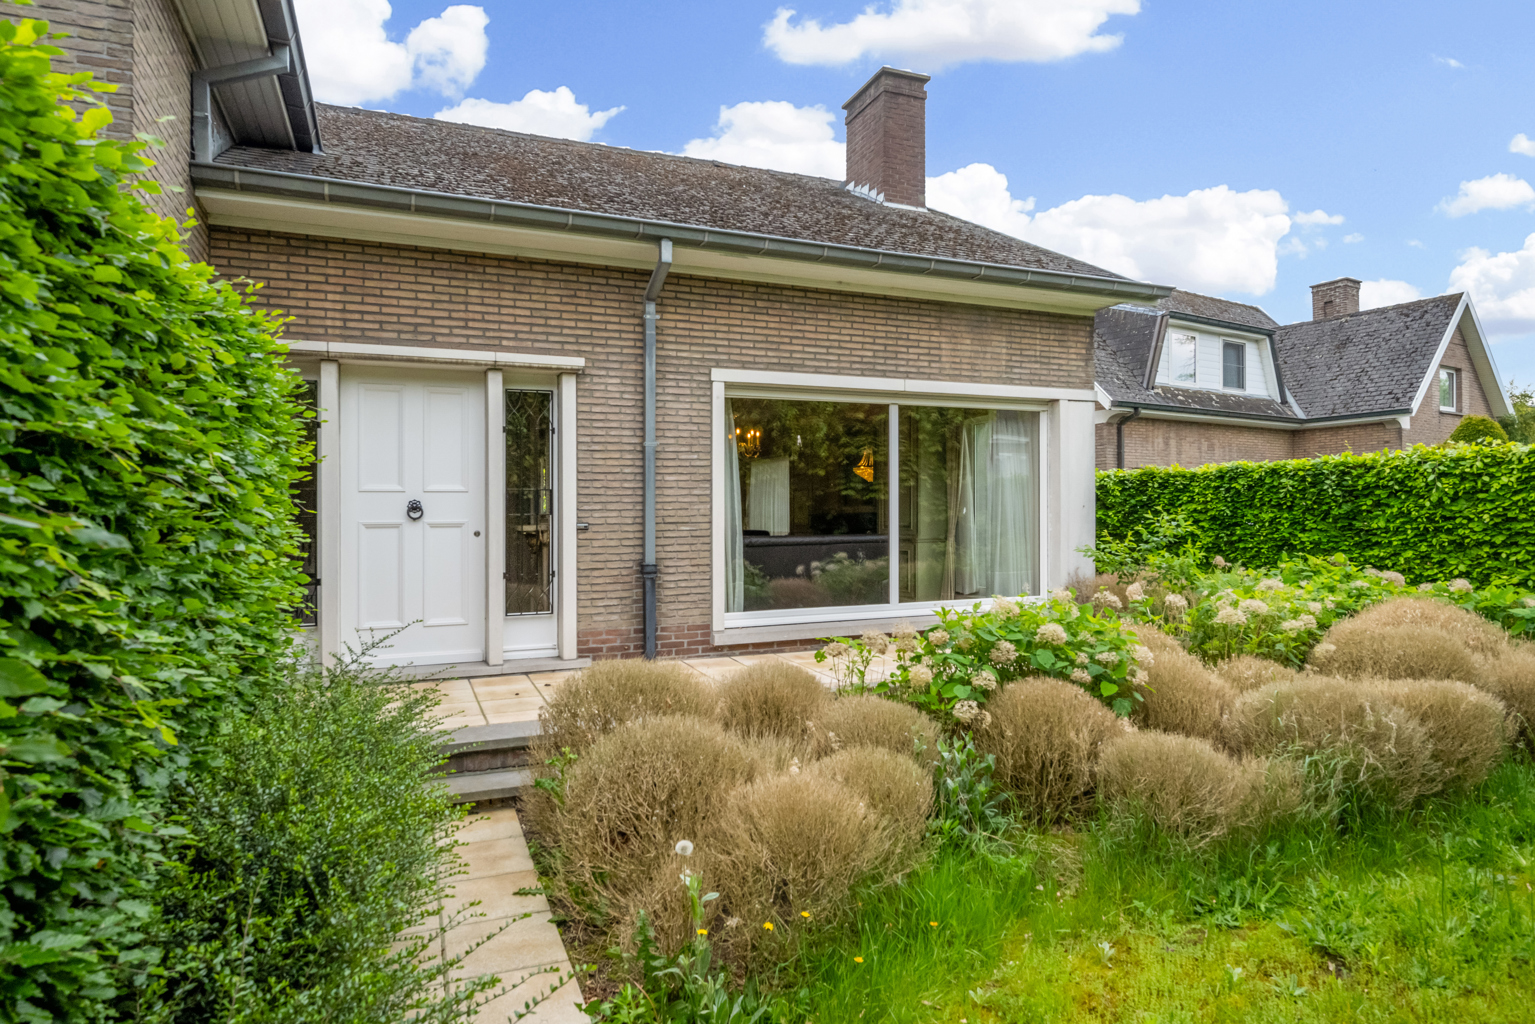 Woning met tuin + achterliggende weides vlakbij Gent en Zwijnaarde. foto 2